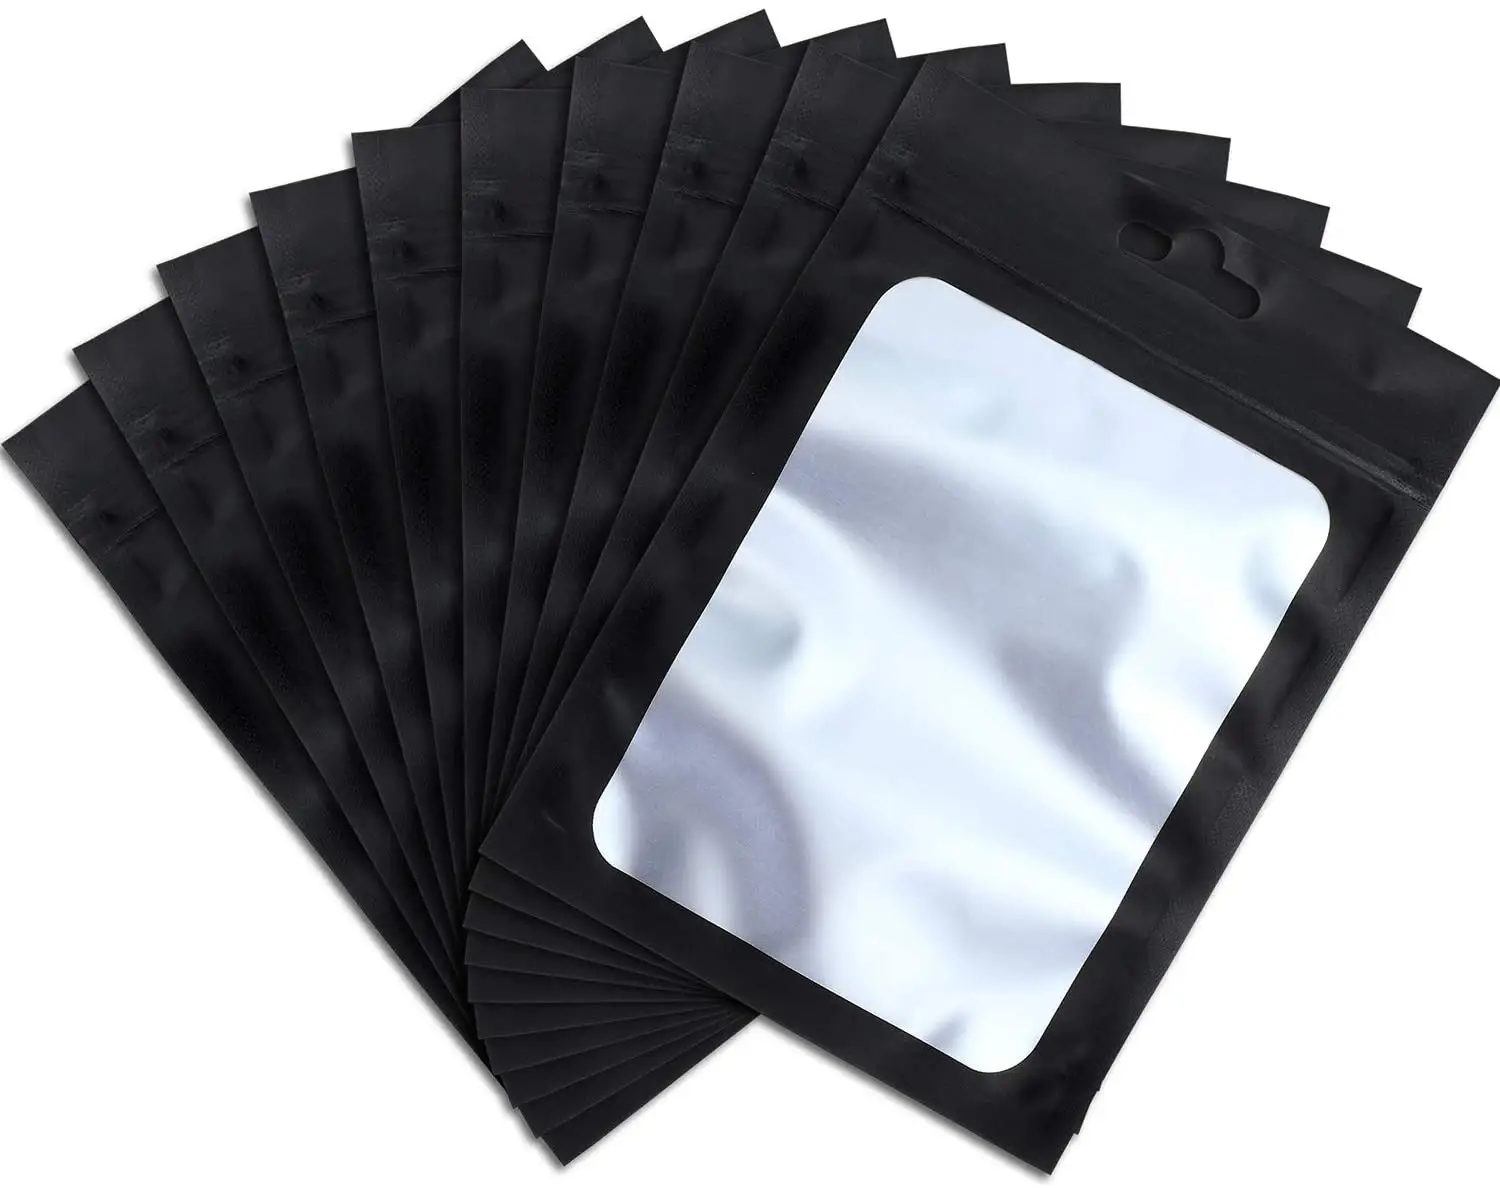 Personalizado impreso a prueba de papel de aluminio sellado de 3 lados comida tuerca paquete aperitivo cremallera Ziplock 3,5g Mylar bolsas con ventana transparente